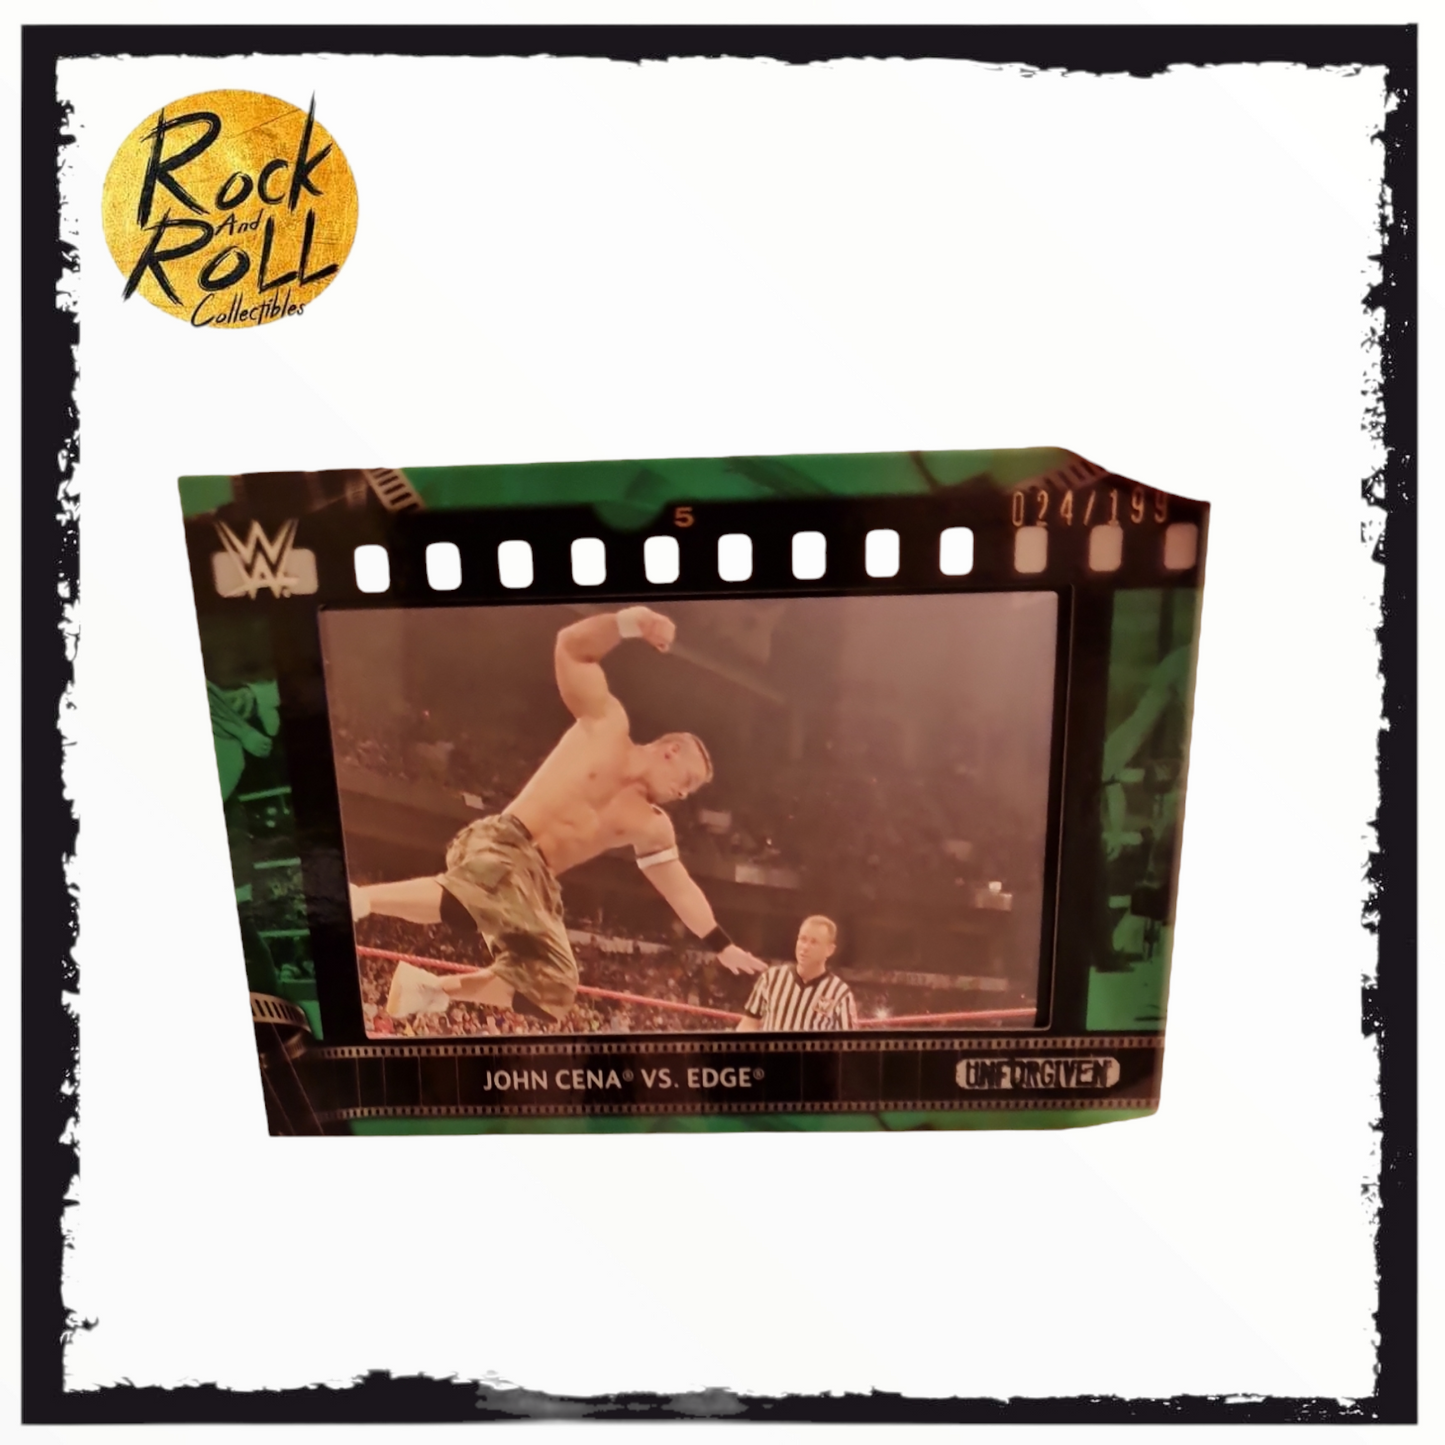 John Cena Vs Edge - Topps WWE 2021 - Film Strip Relic Card - 024/199 - Green